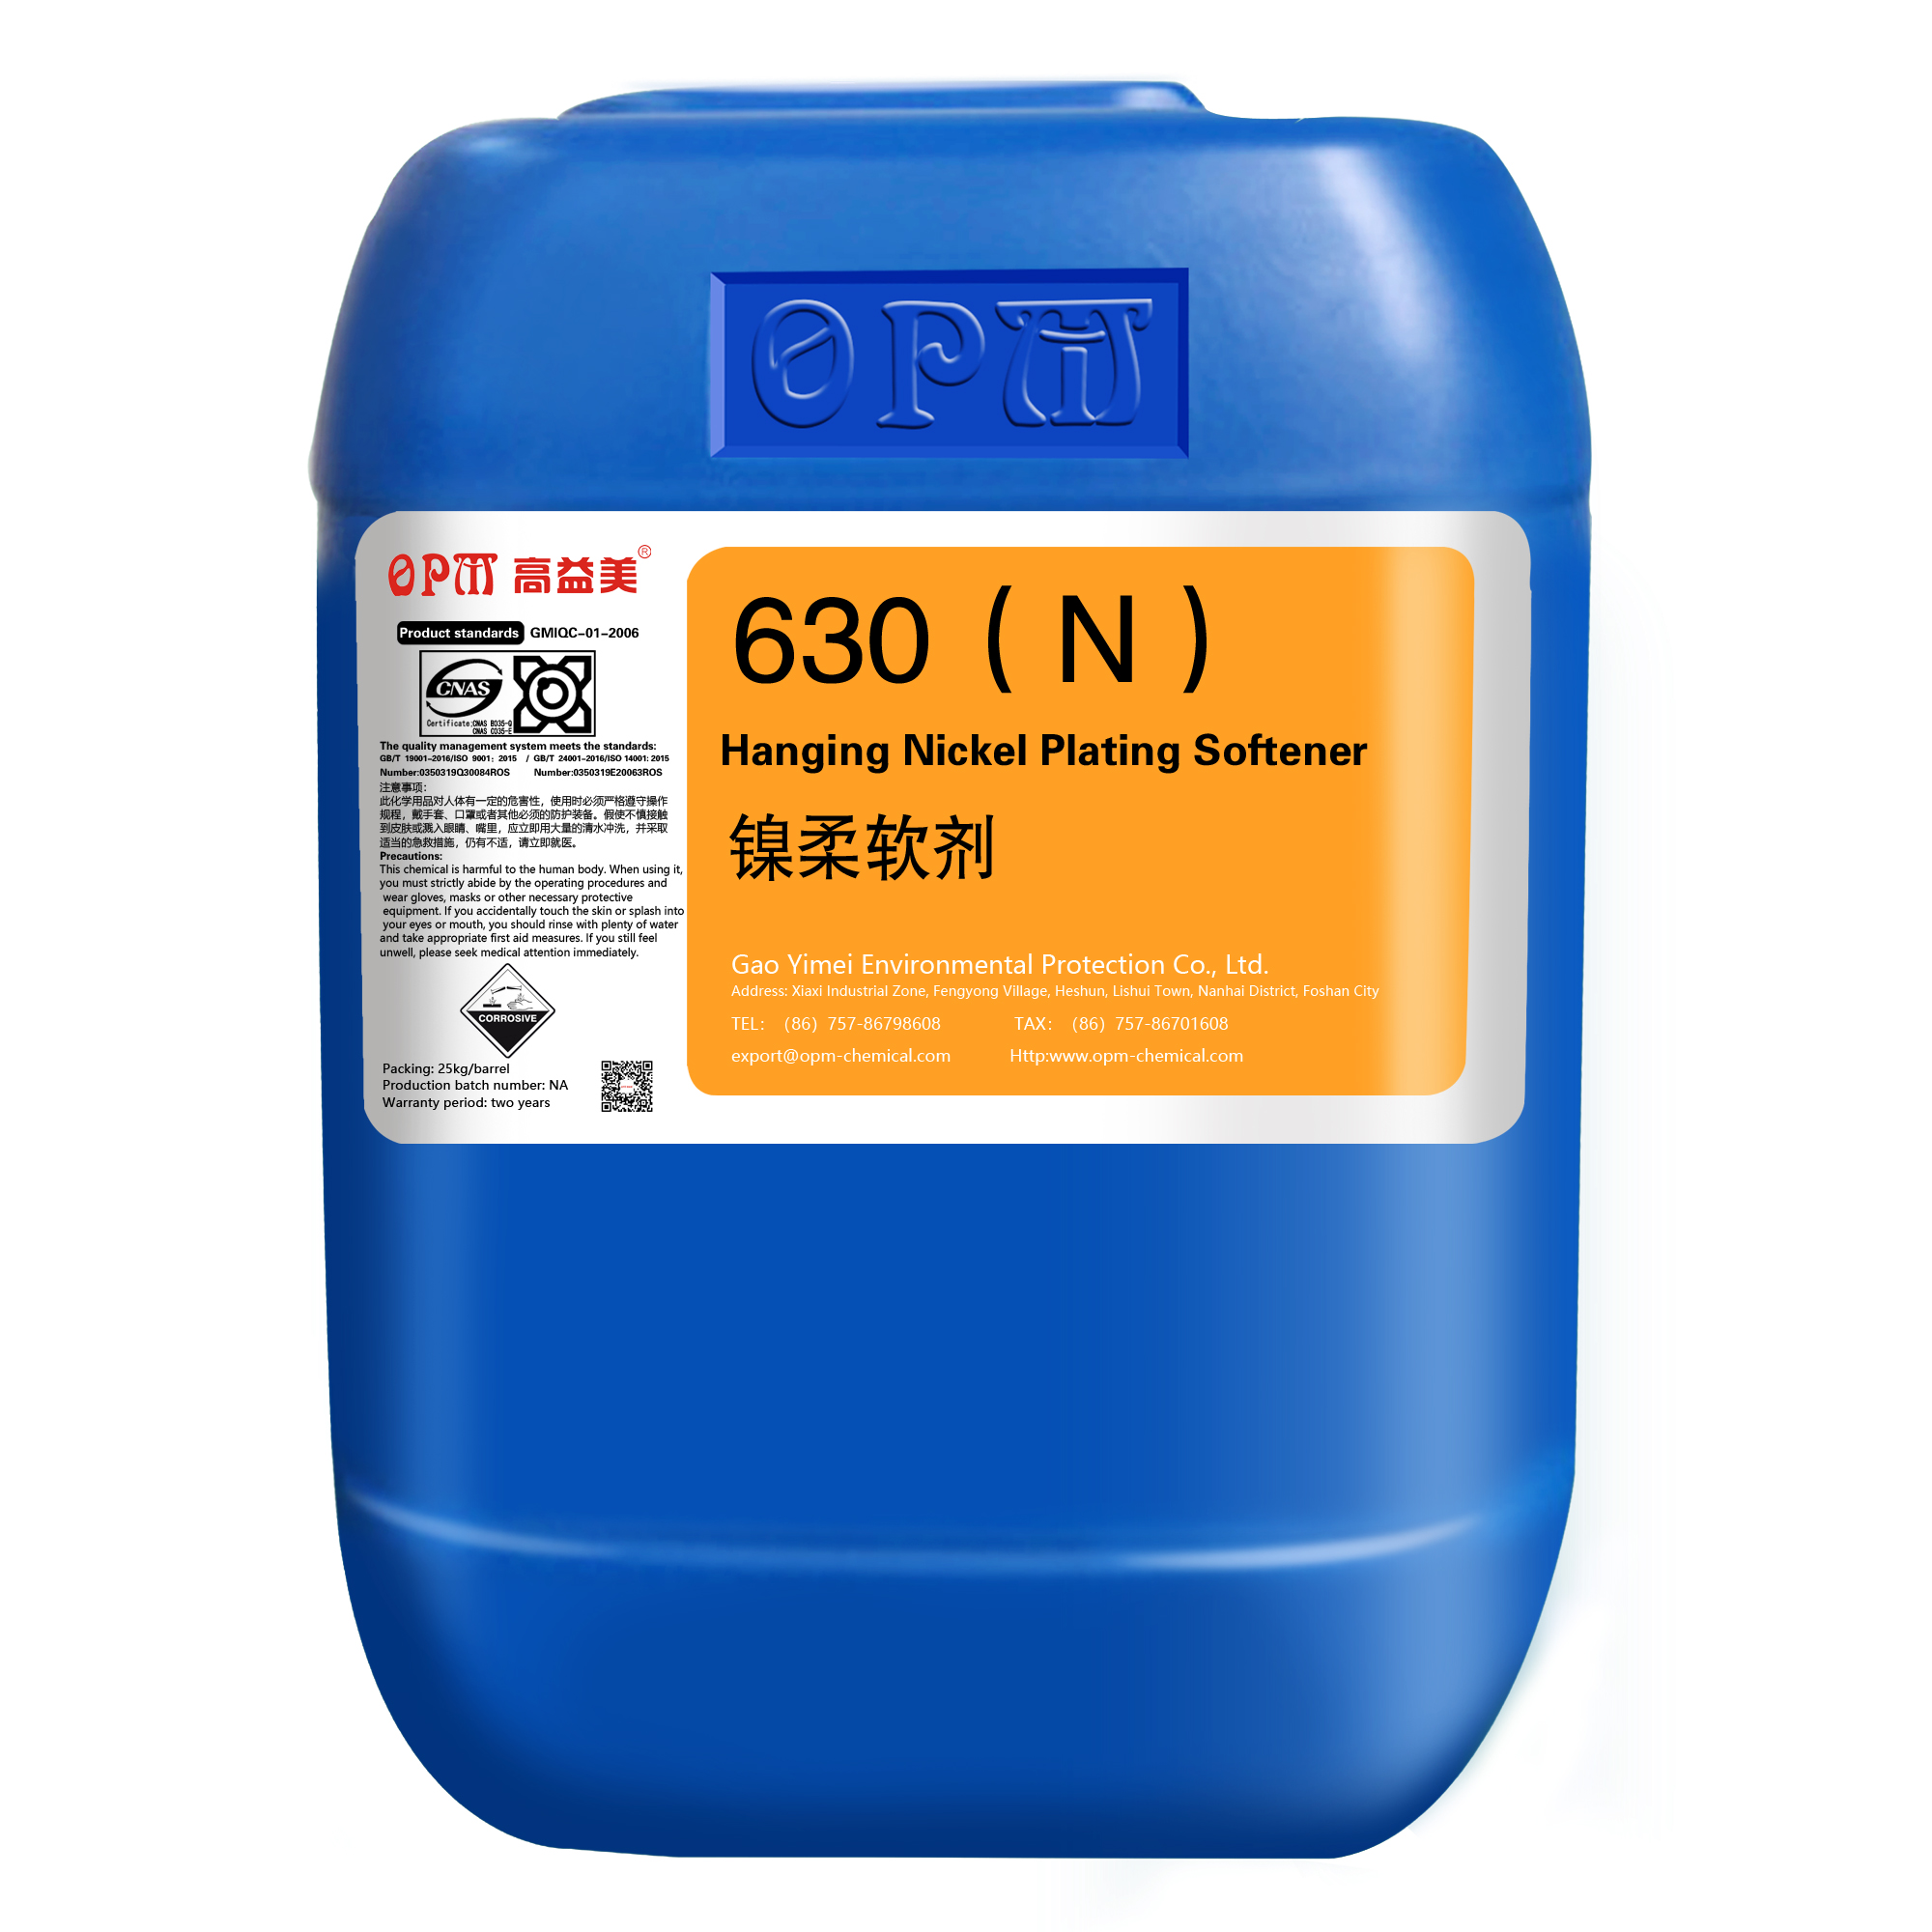 630Hanging Nickel Plating Softener